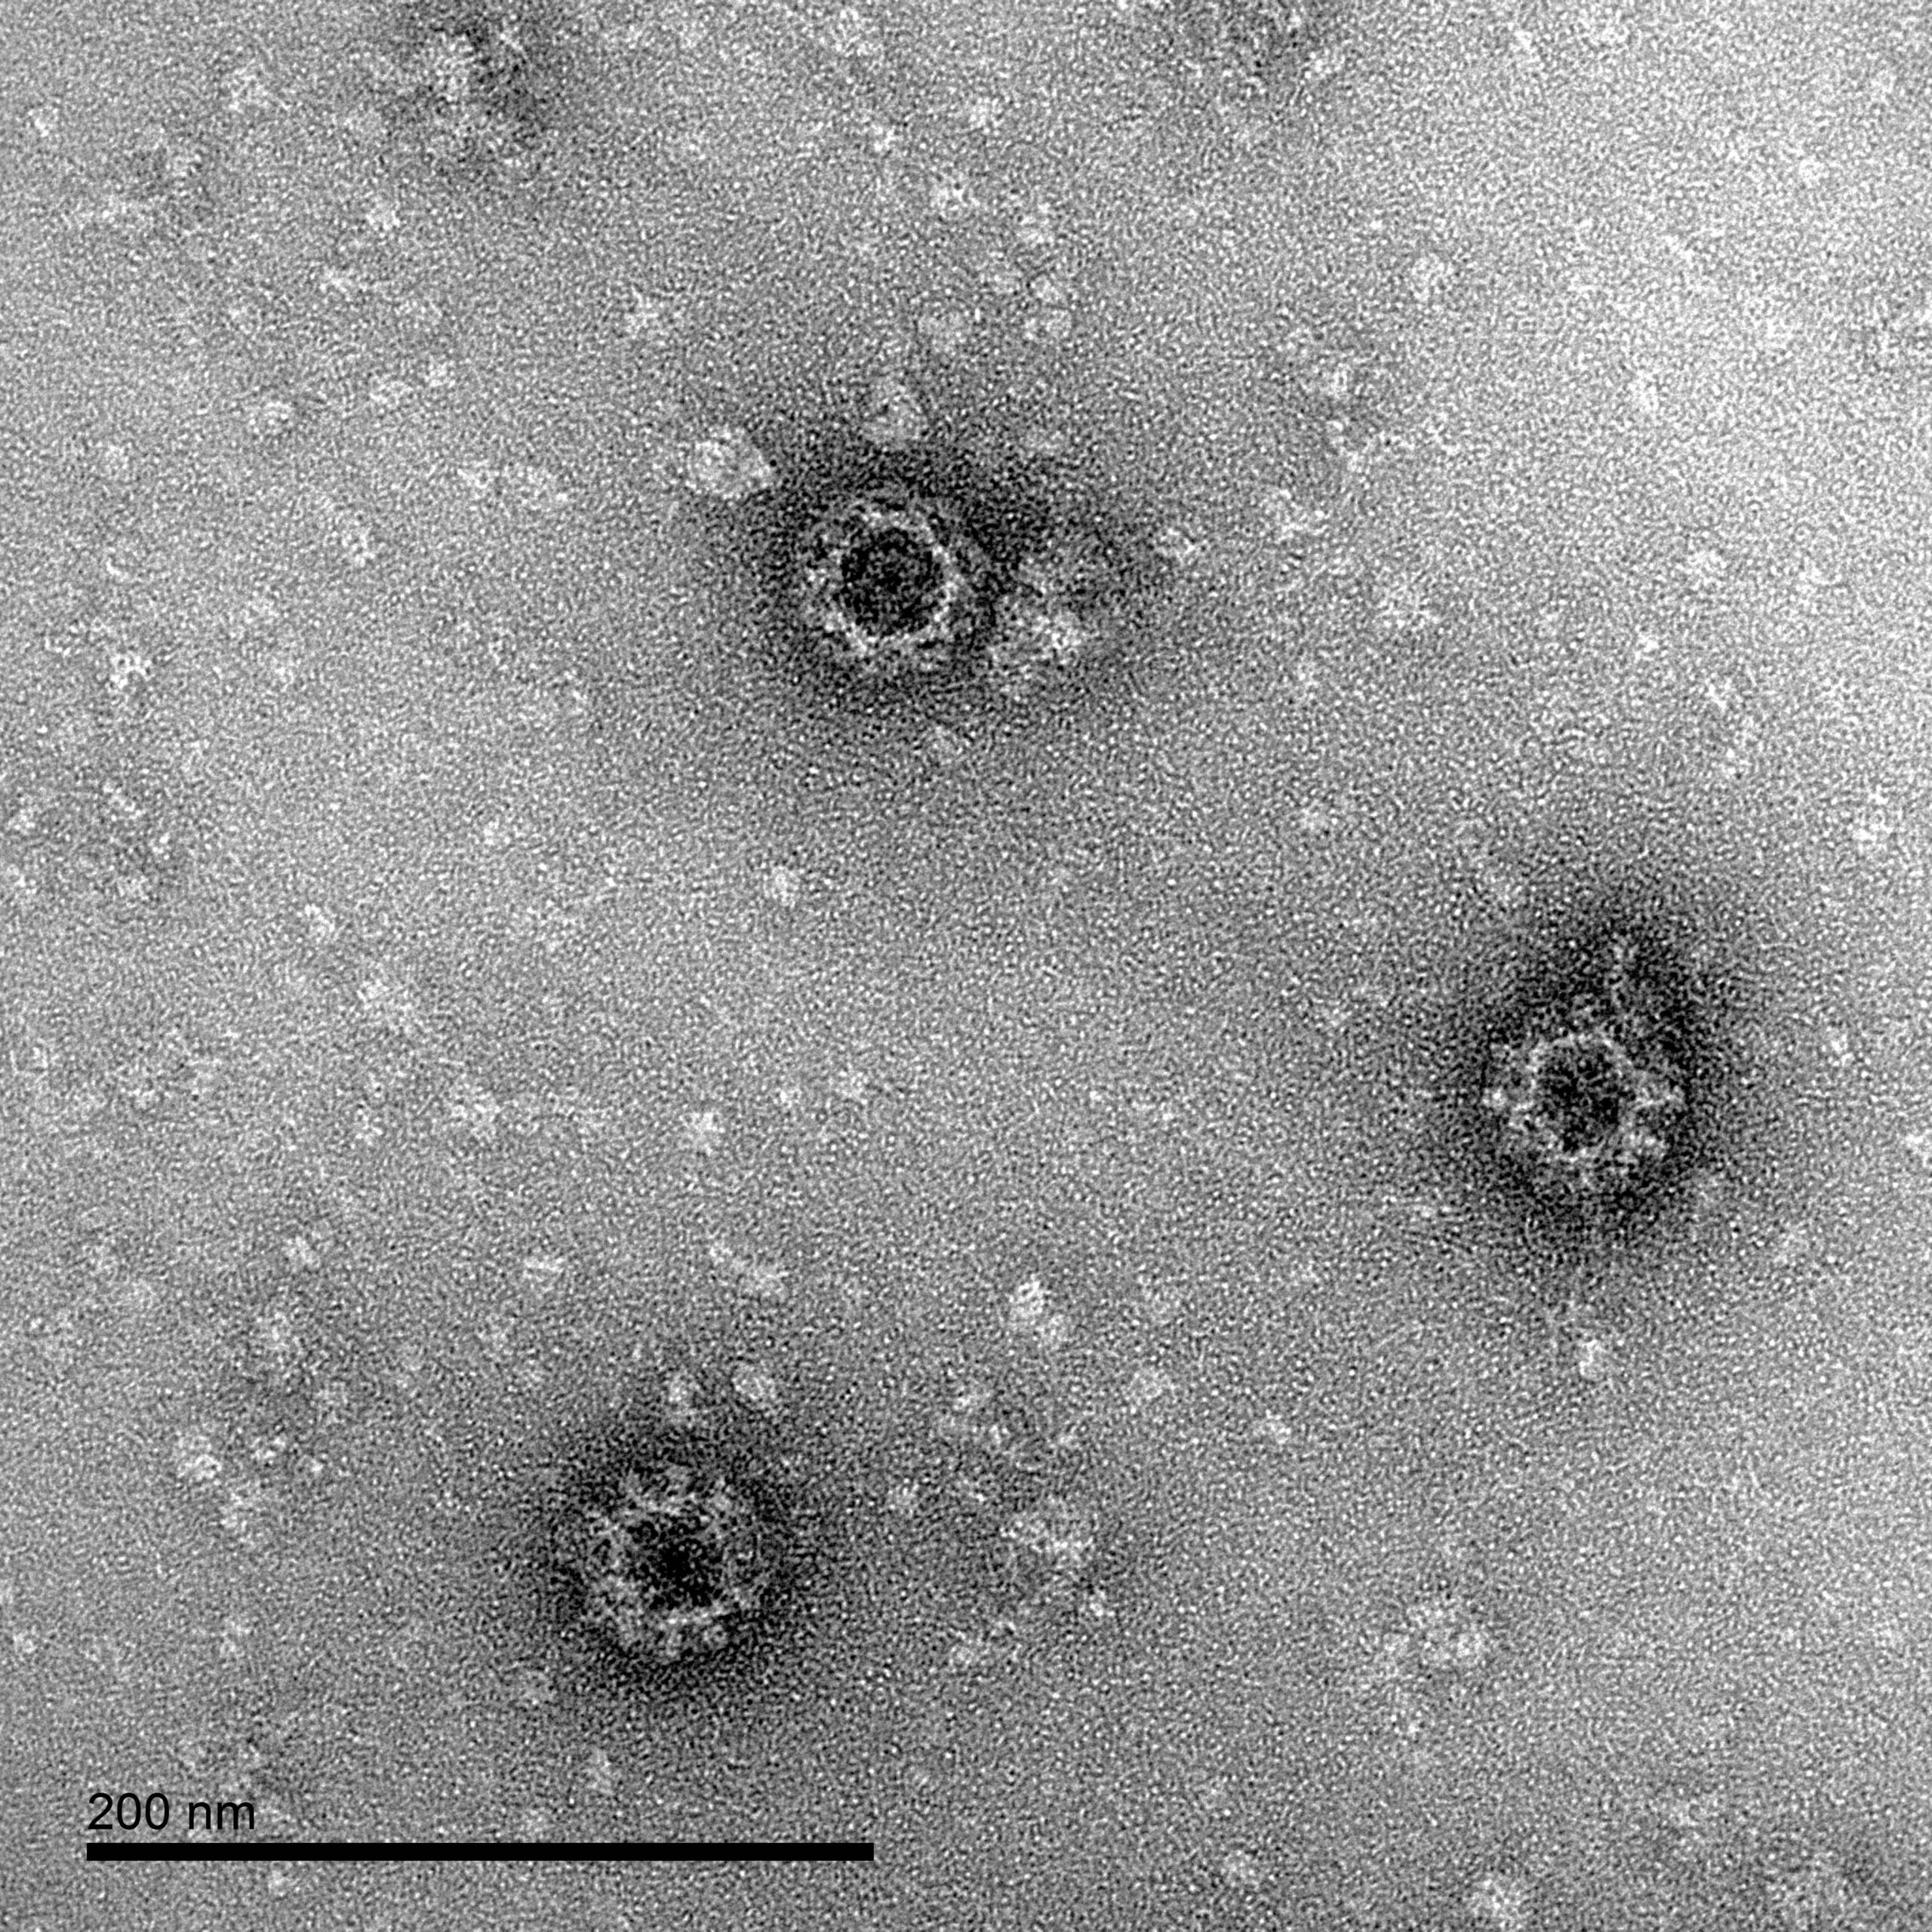 O'Nyong'Nyong Virus-Like Particles